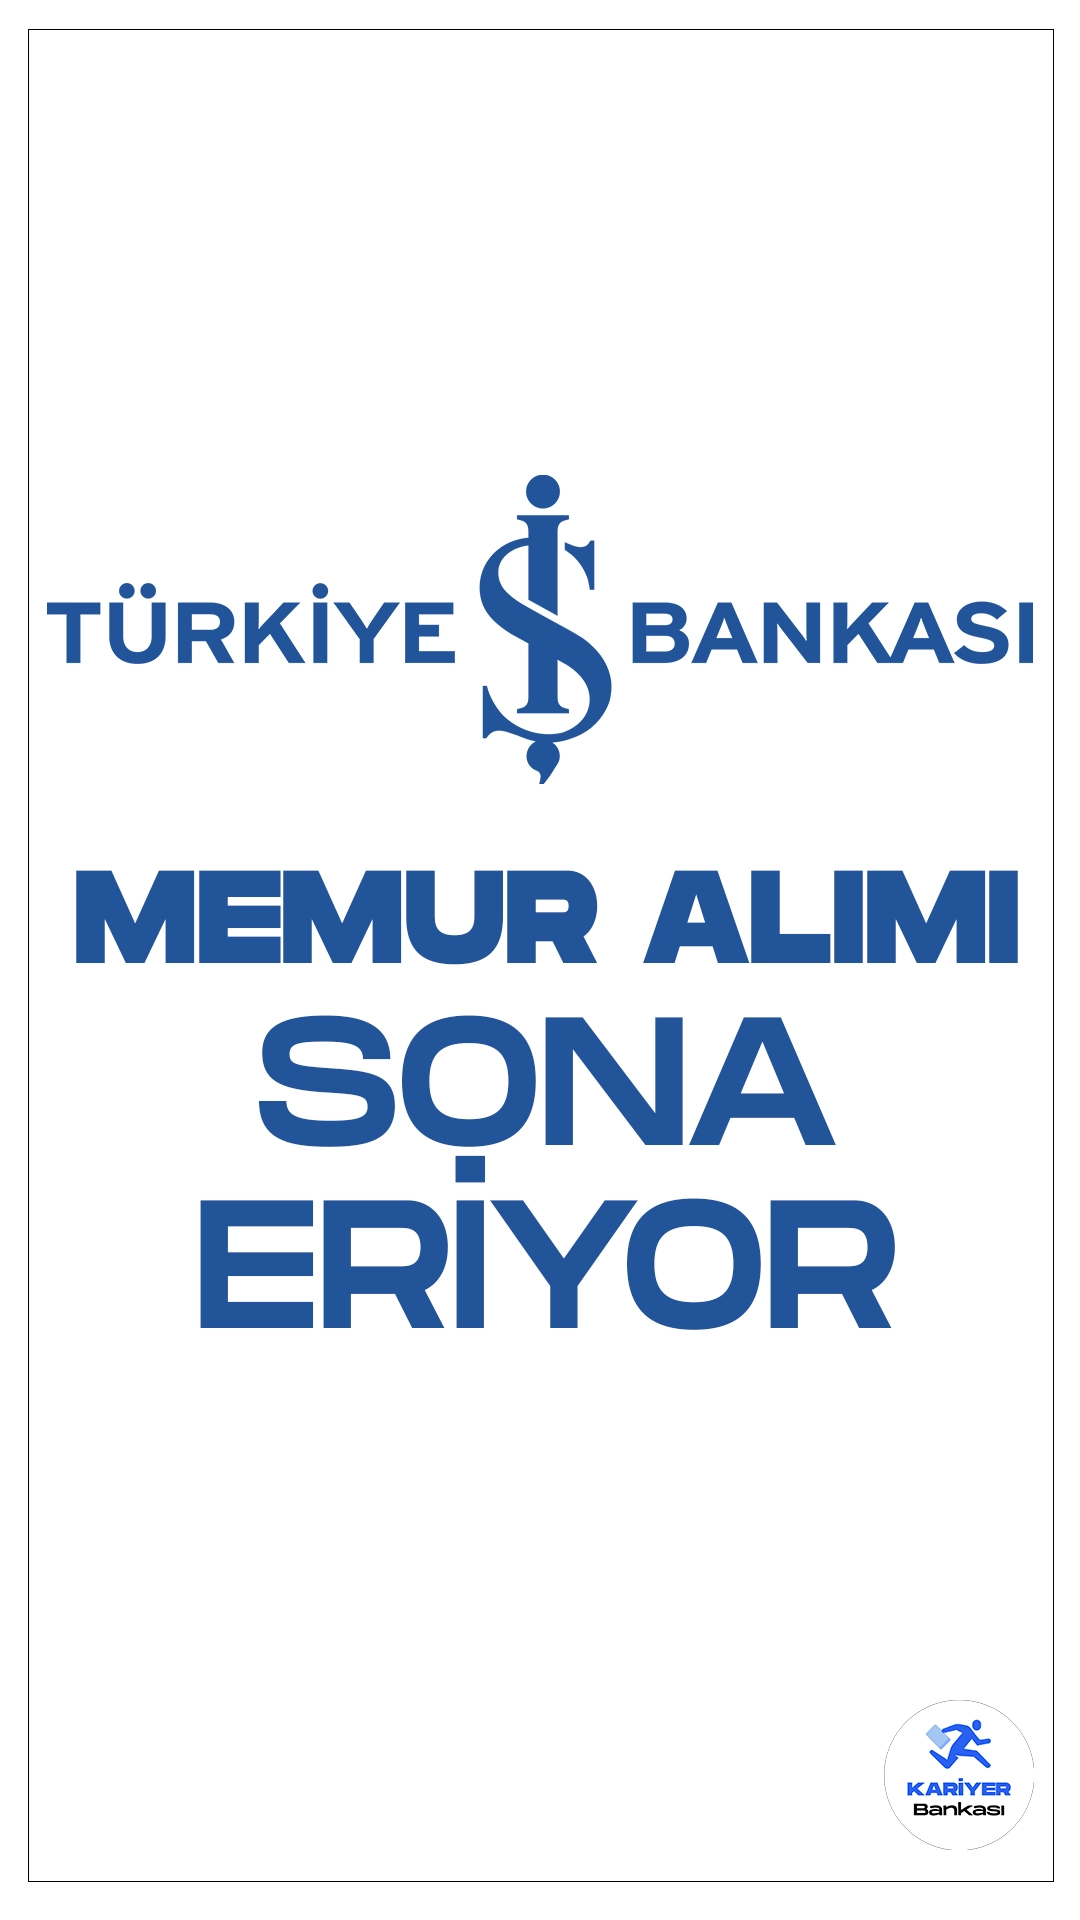 İş Bankası Memur Alımı Başvuruları Sona Eriyor.Türkiye İş Bankası Kariyer sayfası üzerinden yayımlanan duyuruda, İş Bankası Şubelerinde temel bankacılık hizmetlerini yerine getirmek üzere Memur pozisyonunda görevlendirilecek personel alımı yapılacağı aktarıldı. Başvuru işlemleri yarın (11 Mart 2024) sona erecek.Başvuru yapacak adayların belirtilen başvuru şartlarını dikkatle incelemesi gerekmektedir.